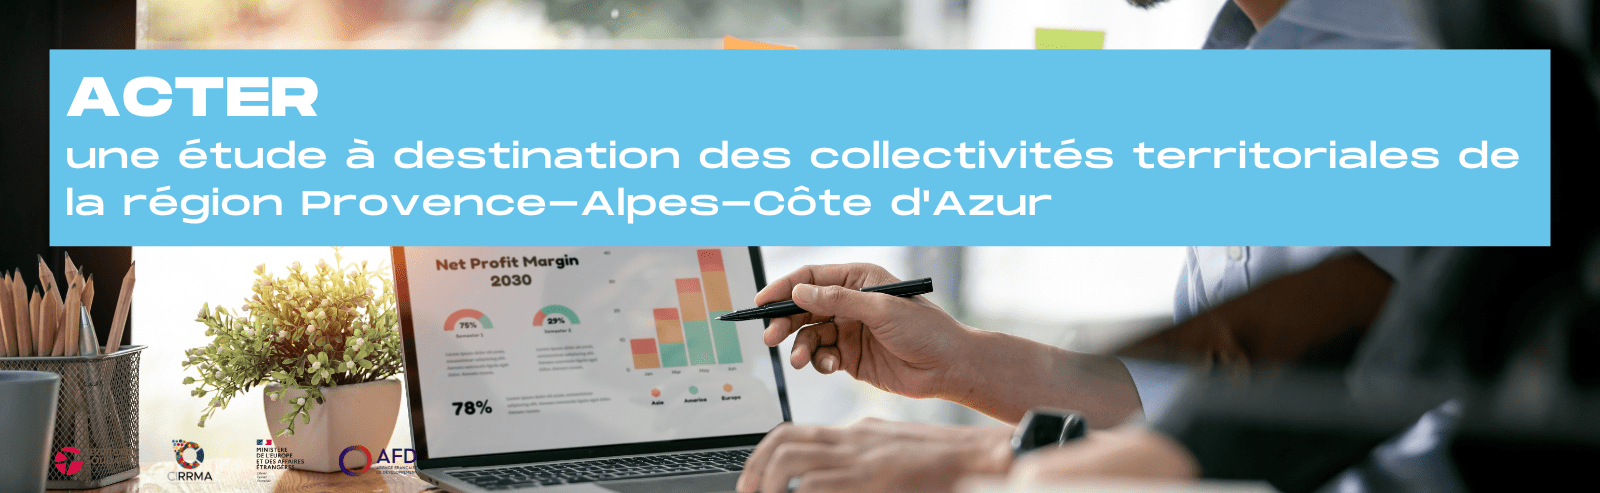 Lancement d'ACTER : une étude à destination des collectivités de la Région Provence-Alpes-Côte d'Azur